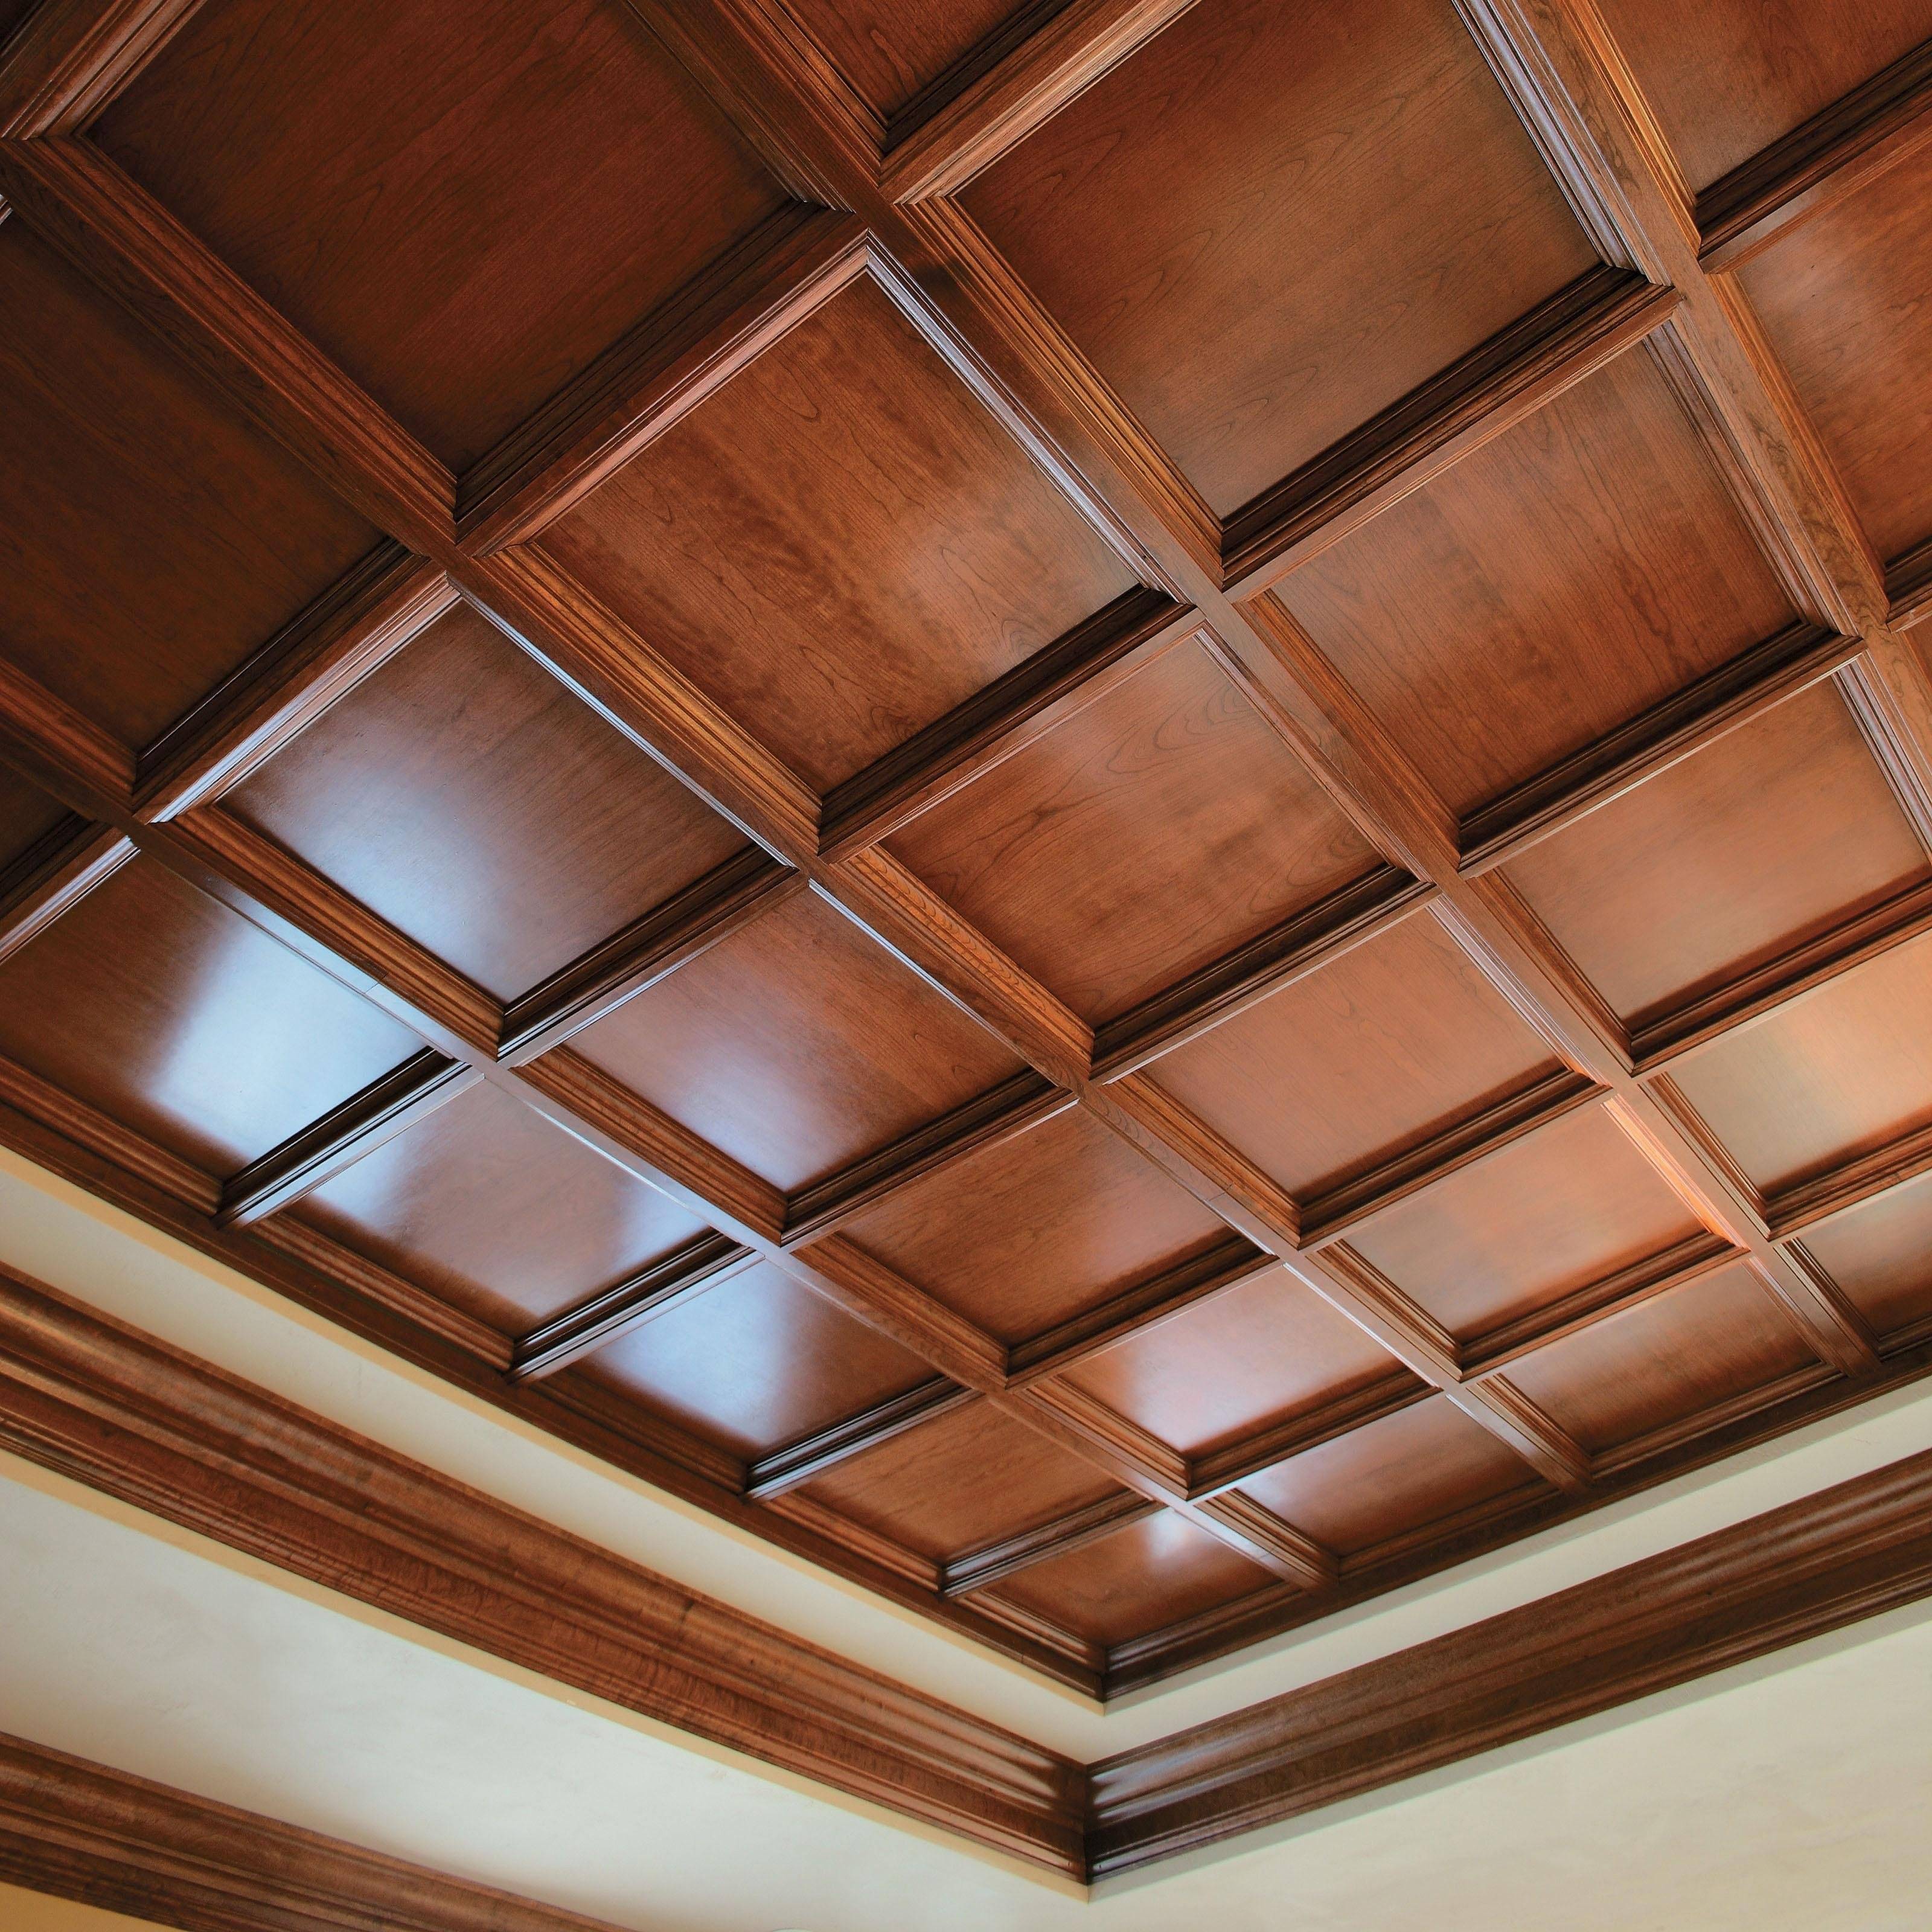 Чем обшить потолок в деревянном доме внутри: идеи ремонта, инструкция, видео и фото